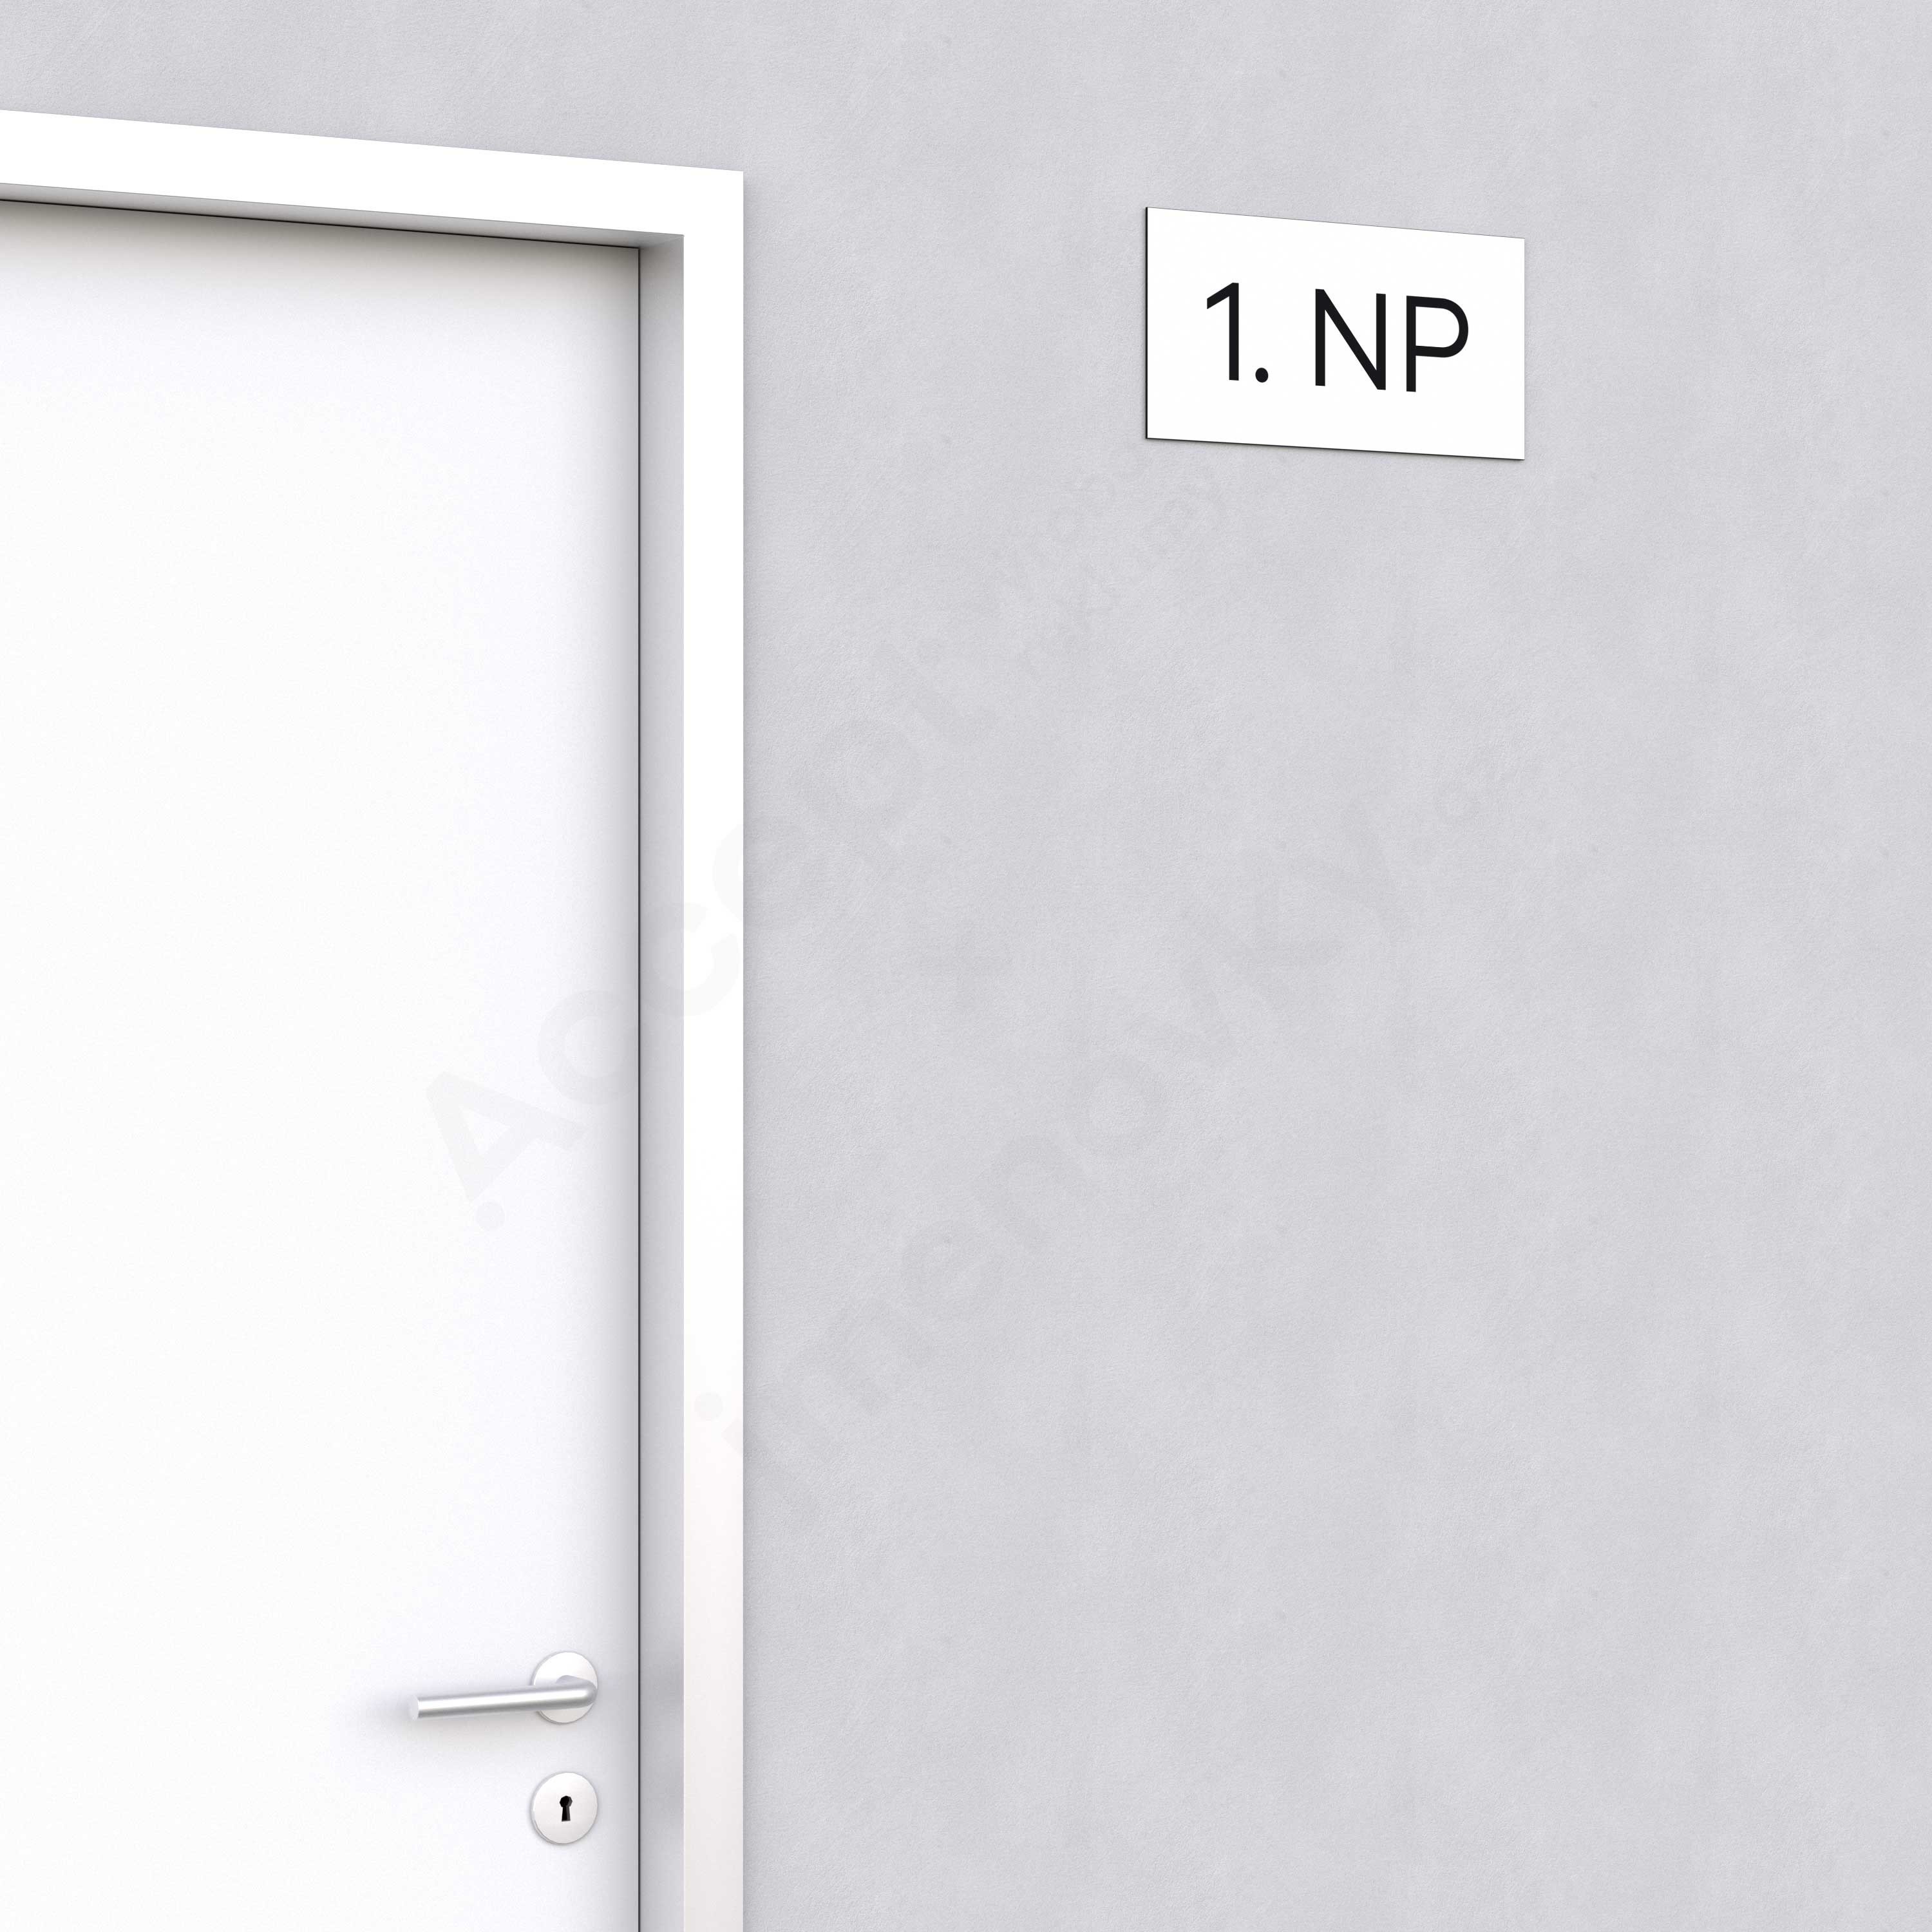 Označení podlaží "1. NP" - bílá tabulka - černý popis - náhled